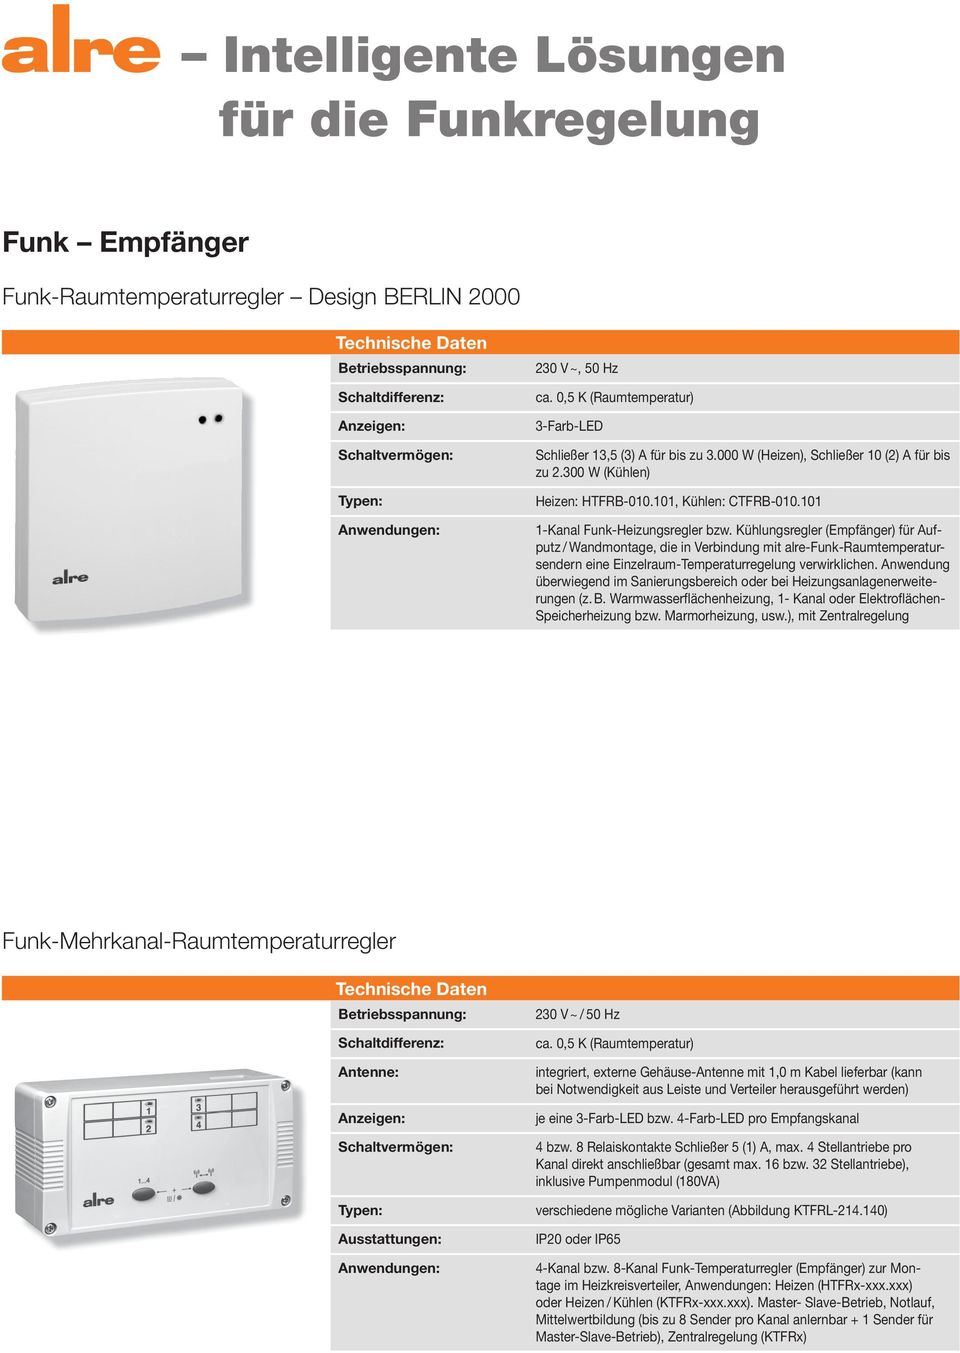 Kühlungsregler (Empfänger) für Aufputz / Wandmontage, die in Verbindung mit alre-funk-raumtemperatursendern eine Einzelraum-Temperaturregelung verwirklichen.